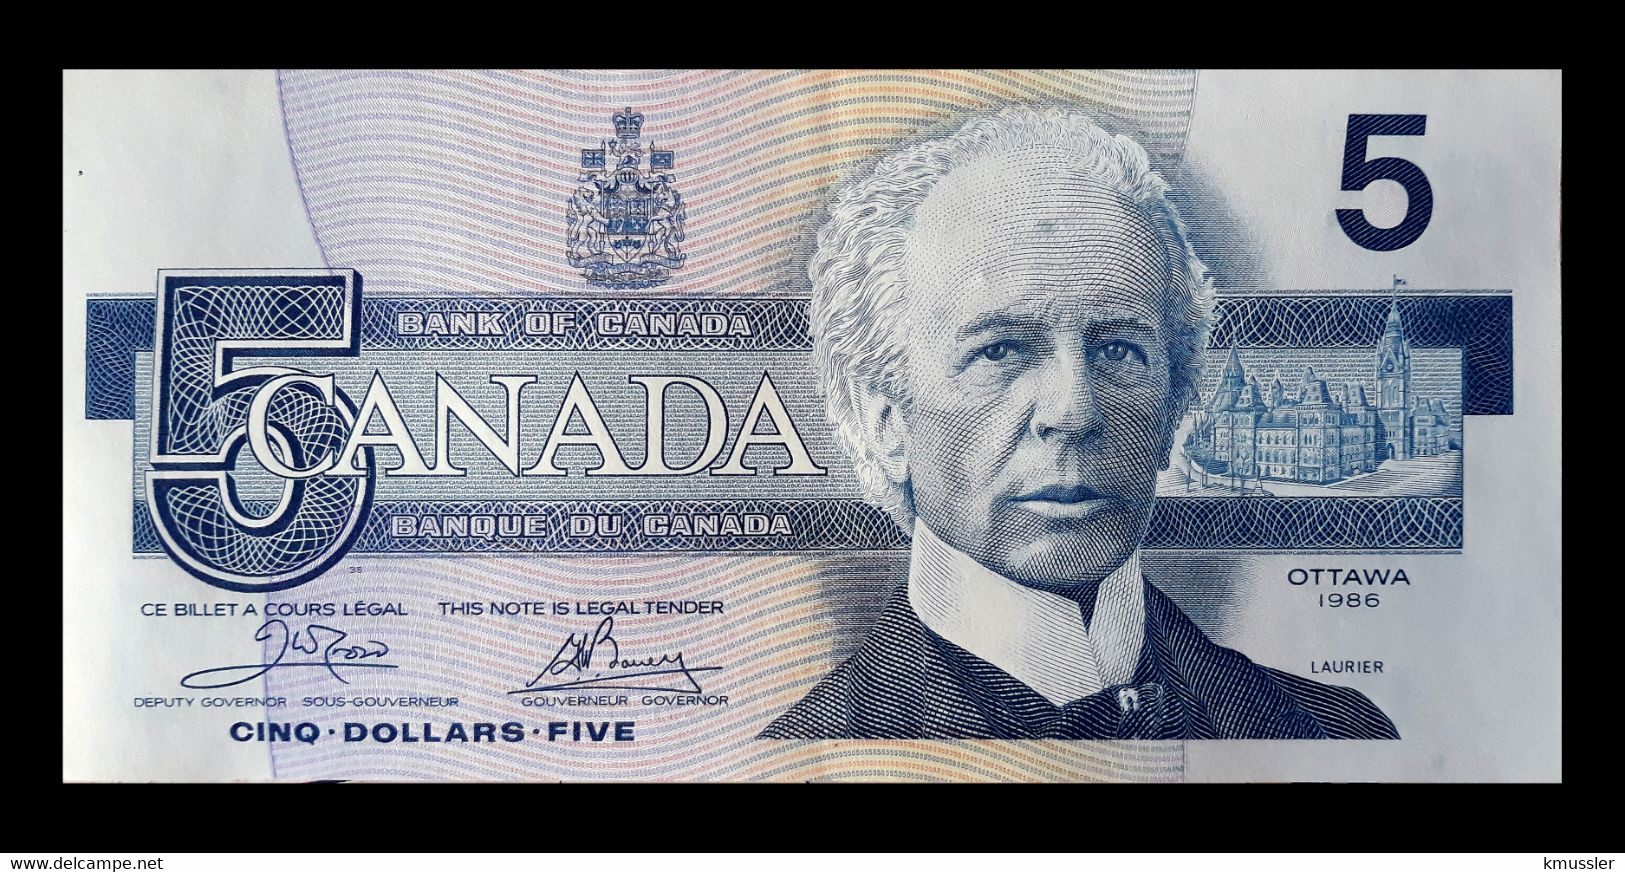 # # # Banknote Kanada (Canada) 5 Dollars 1986 UNC # # # - Kanada